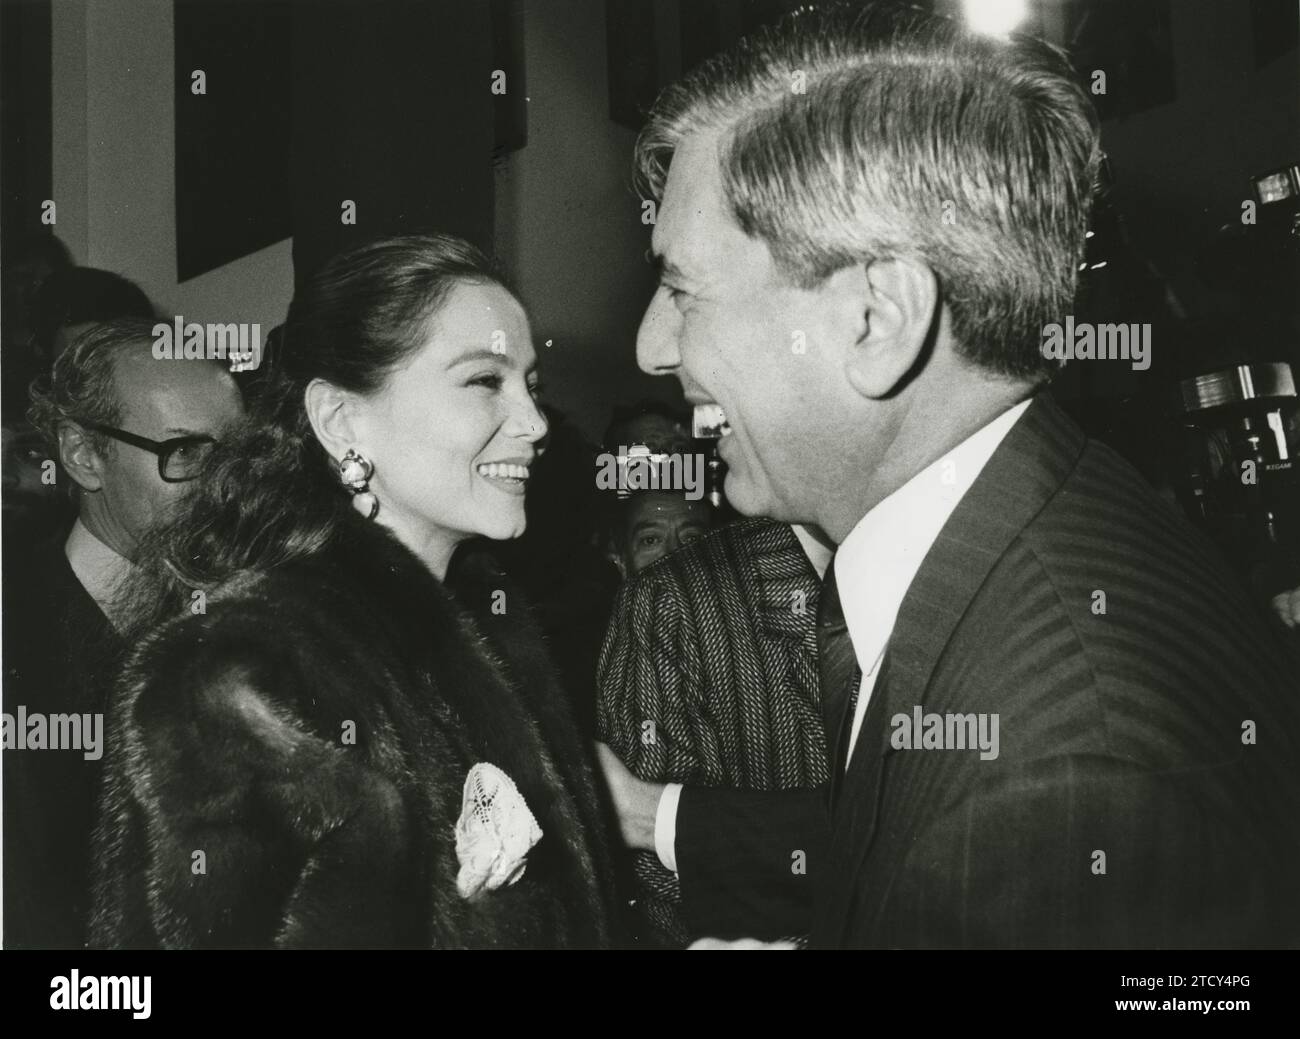 Madrid, 11/03/1987. Mario Vargas Llosa greets Isabel Preysler. In the background, Miguel Boyer. Credit: Album / Archivo ABC / José Sánchez Martínez Stock Photo